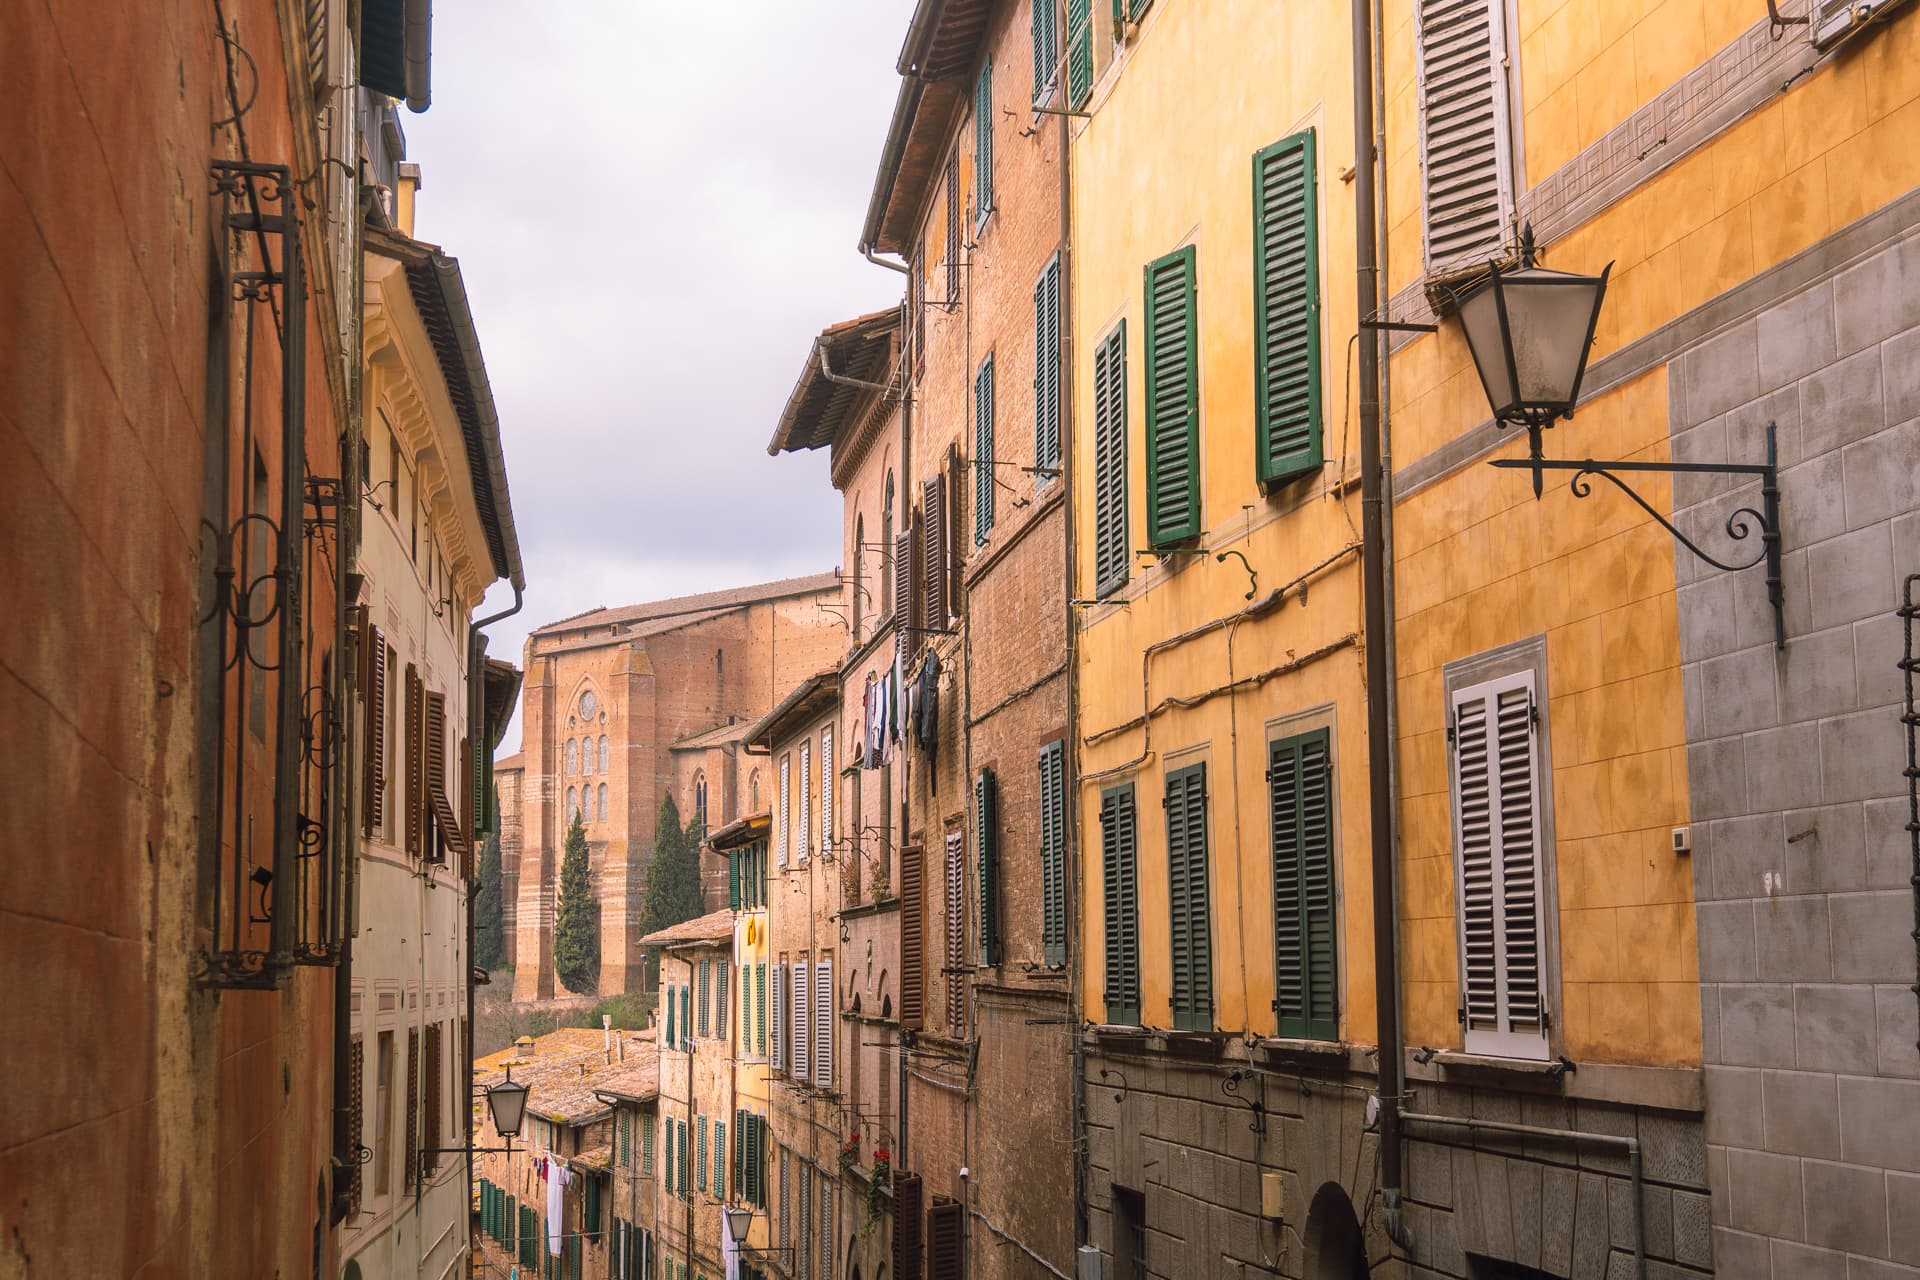 Uliczki w Sienie | Zwiedzanie Sieny